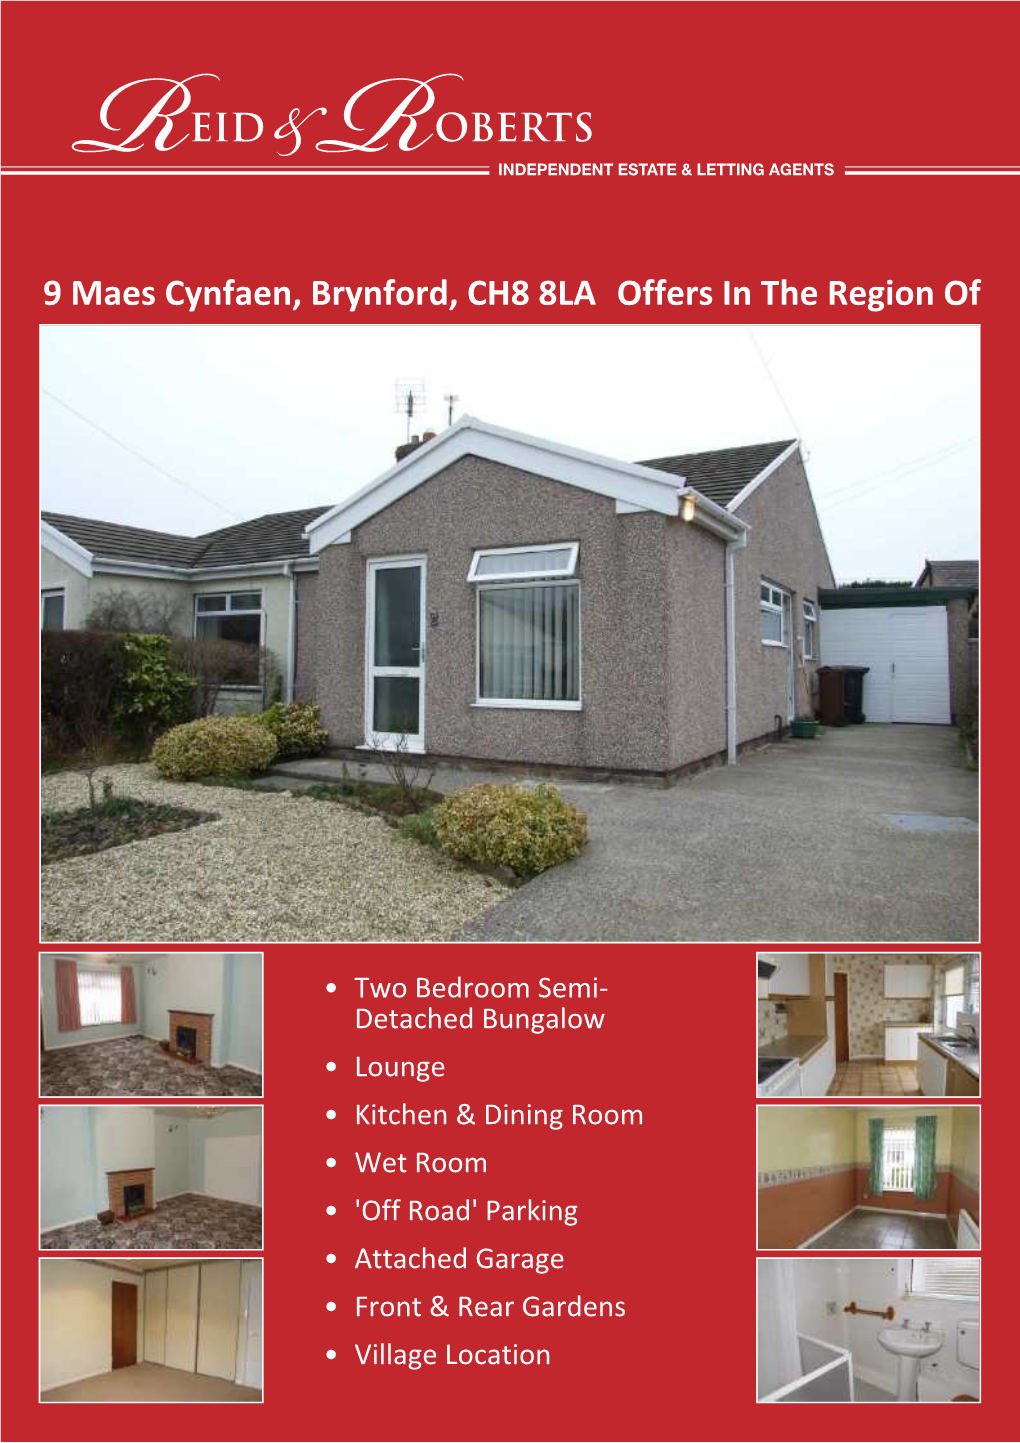 9 Maes Cynfaen, Brynford, CH8 8LA Offers in the Region Of